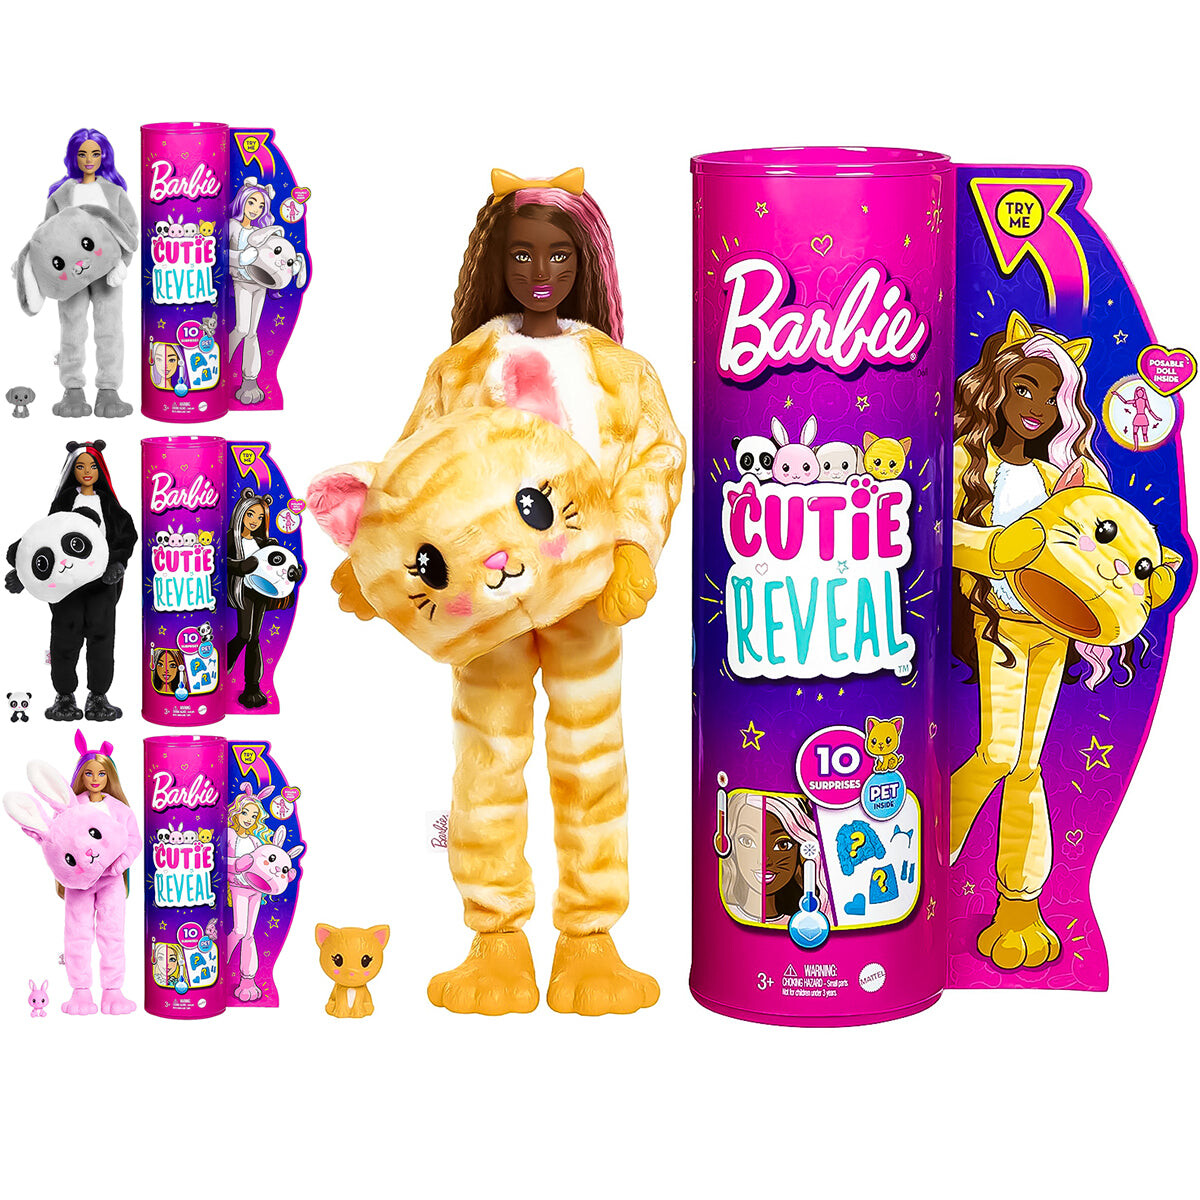 Muñeca Barbie Cutie Reveal Con Disfraz + Accesorios - Barbie Gato 